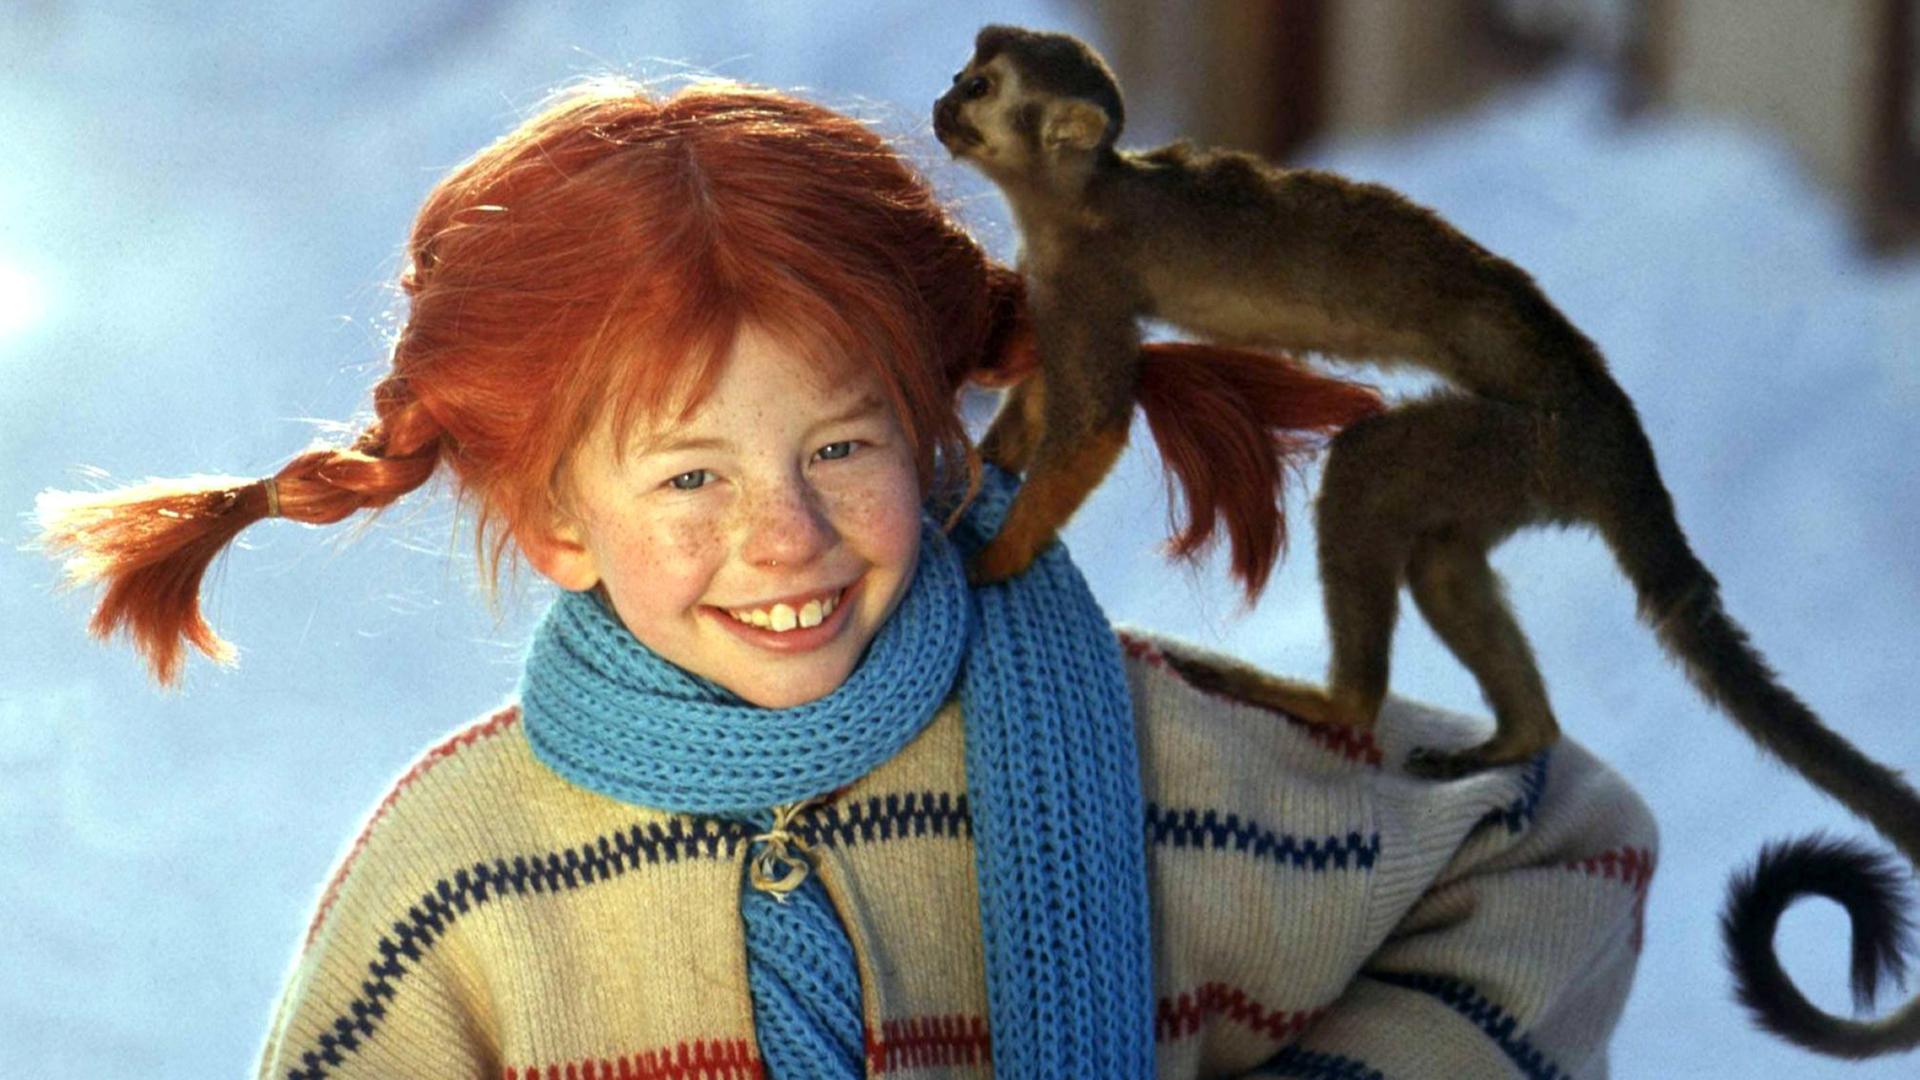 Lächelnd trägt die Schauspielerin Inger Nilsson in einem Film von 1968 als "Pippi Langstrumpf" ihr Äffchen "Herr Nilsson" auf der Schulter spazieren.